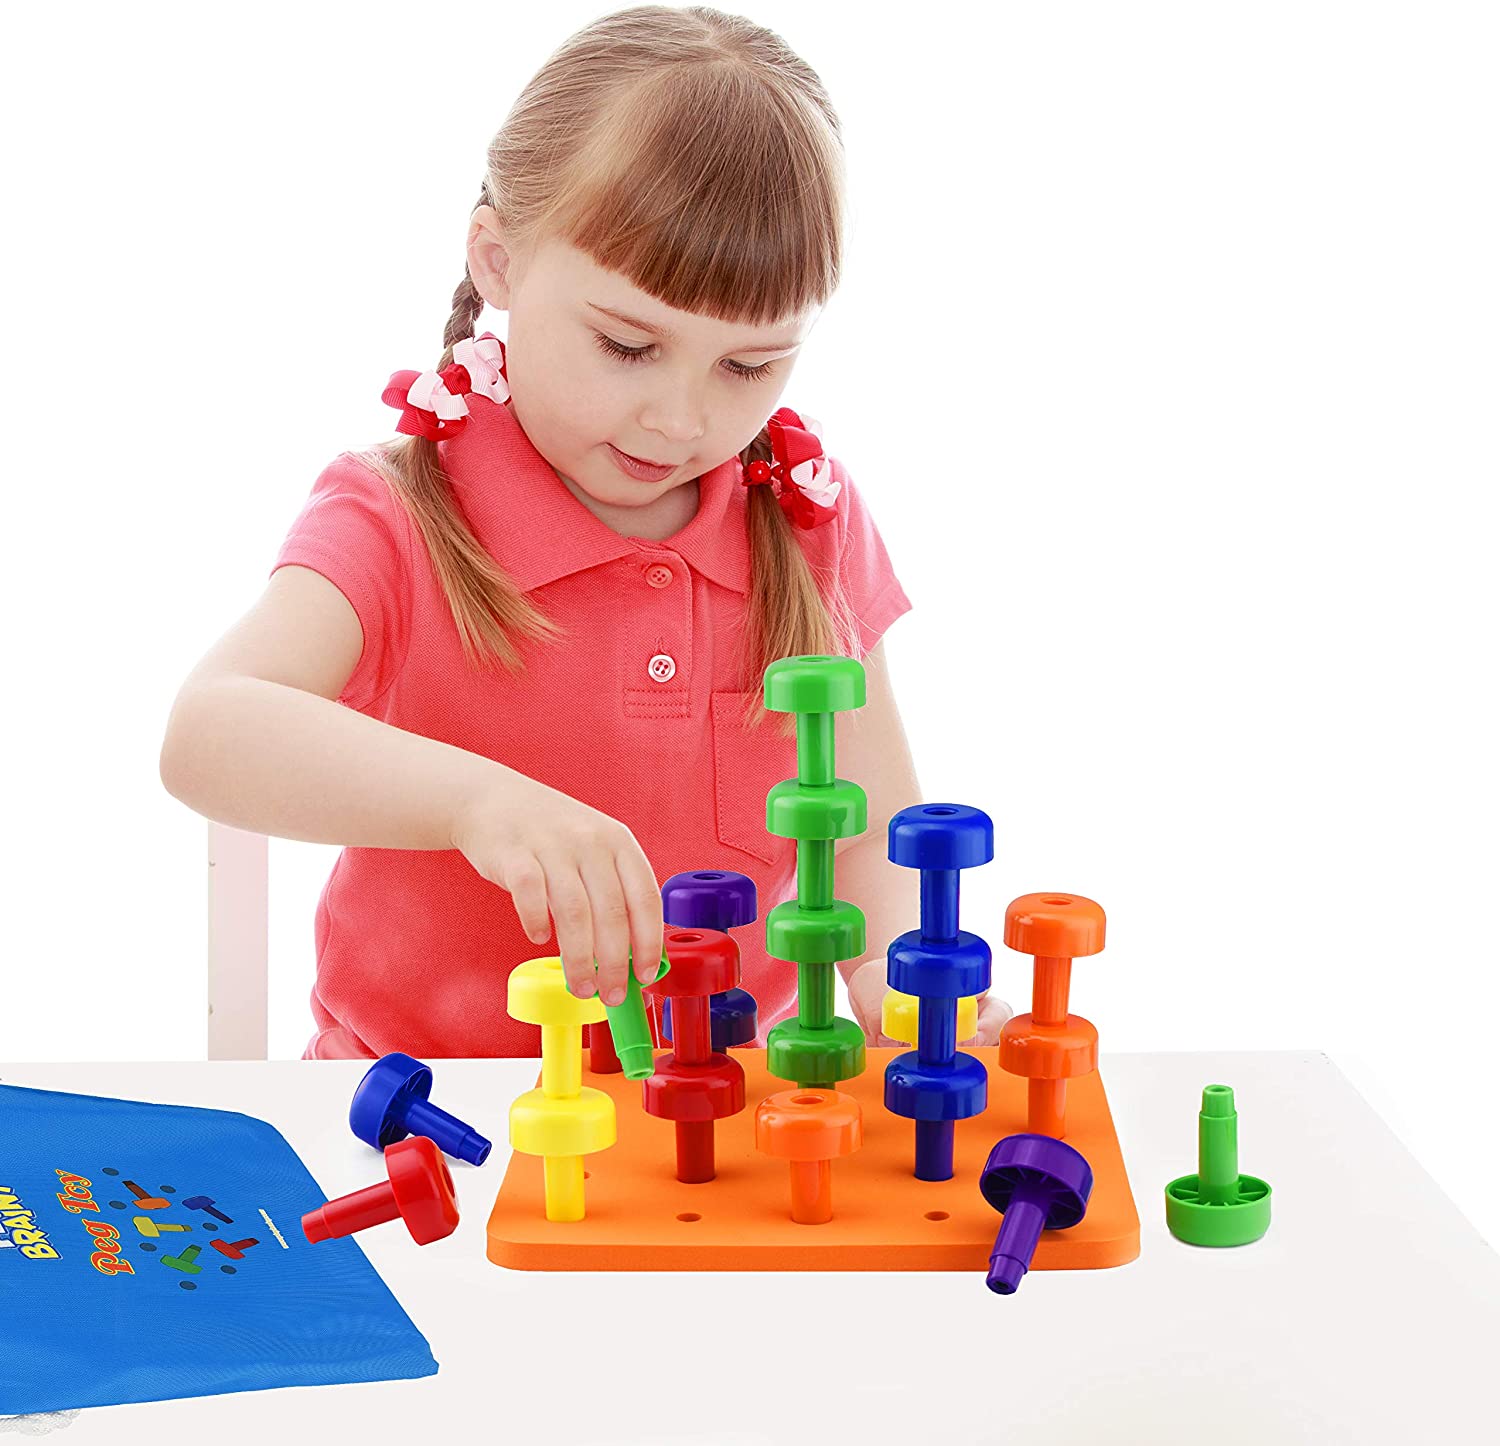 Play Brainy: Peg Toy Set - tinkrLAB